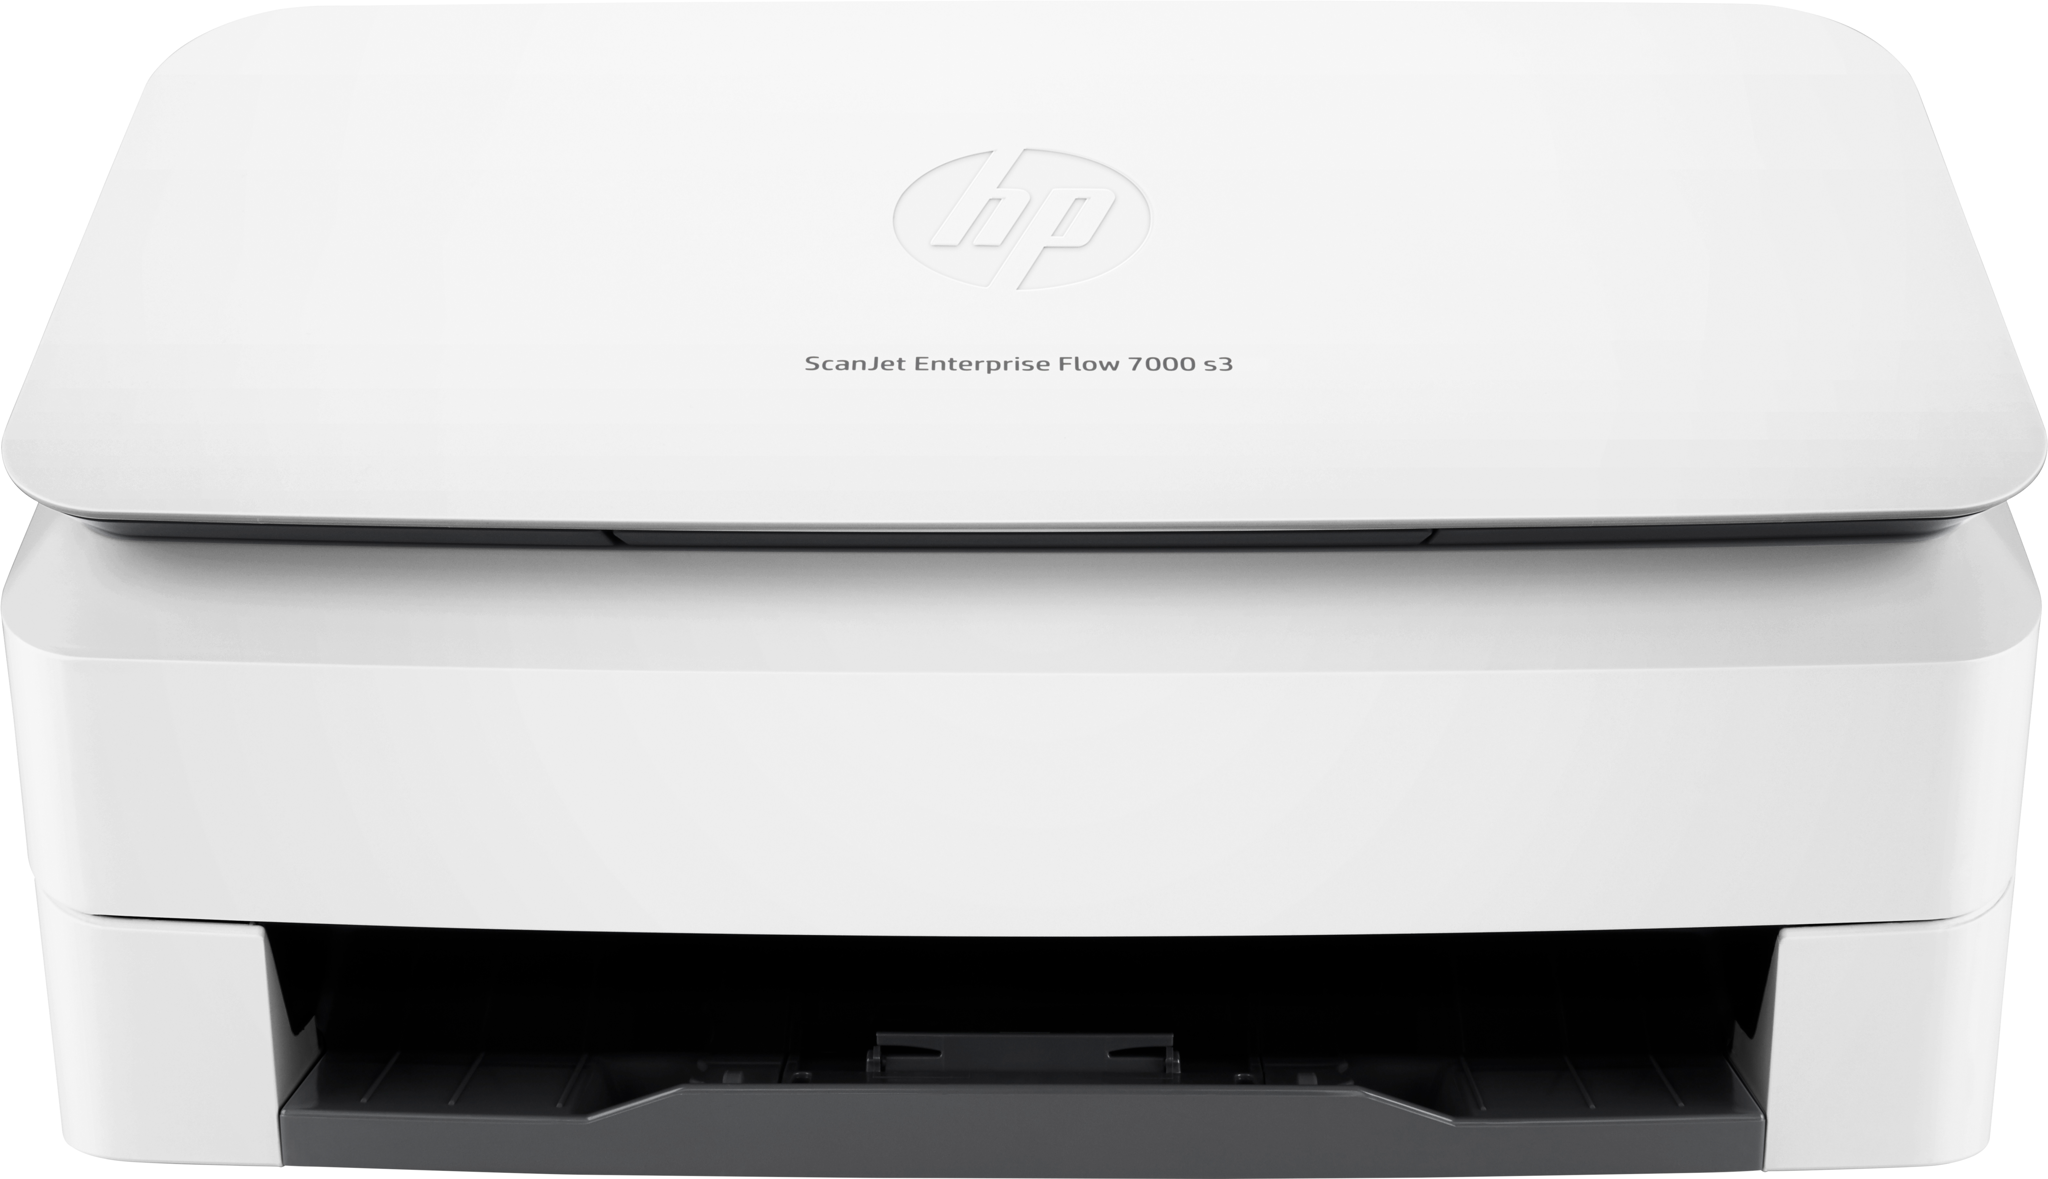 Bild von HP ScanJet Enterprise Flow 7000 s3 Sheet-feed Scanner - Dokumentenscanner - Duplex